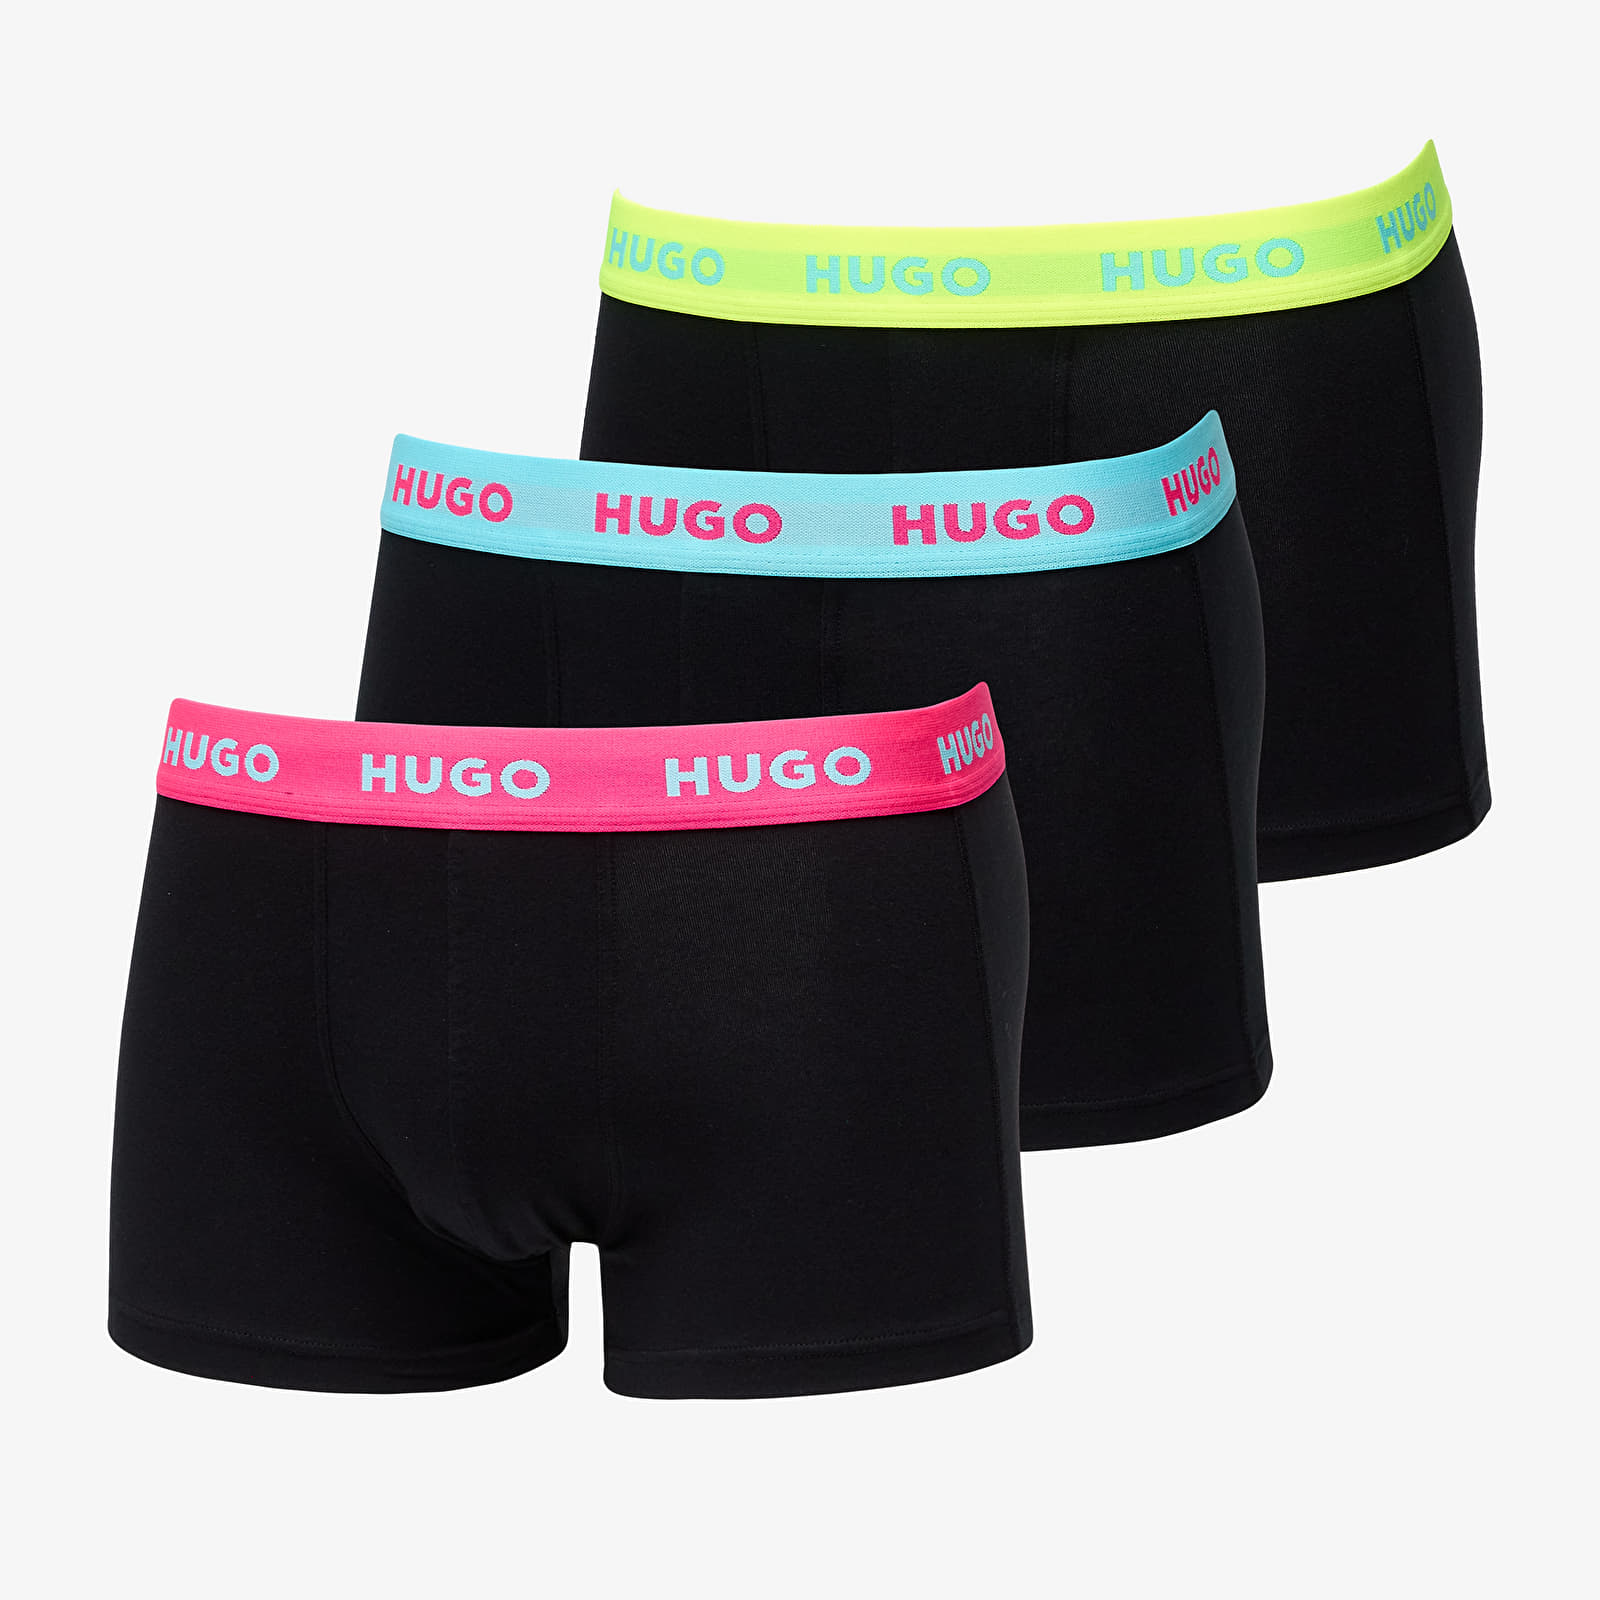 Boxer shorts Hugo Boss Triplet 3-Pack Trunk Black